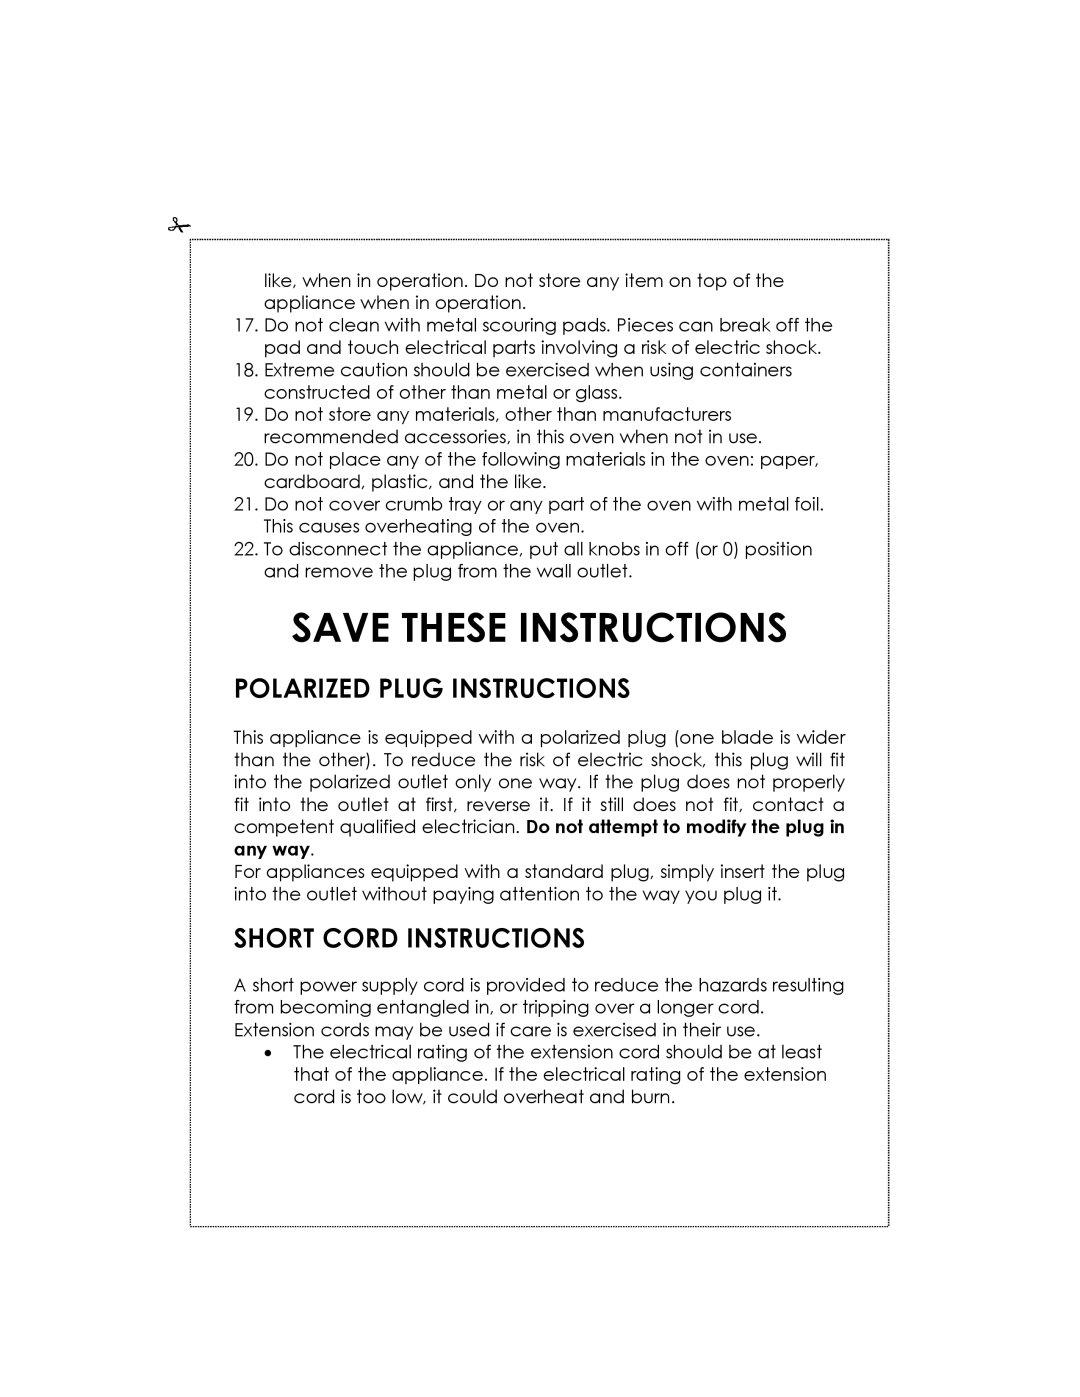 Kalorik USK OV 32091 manual Save These Instructions, Polarized Plug Instructions, Short Cord Instructions 